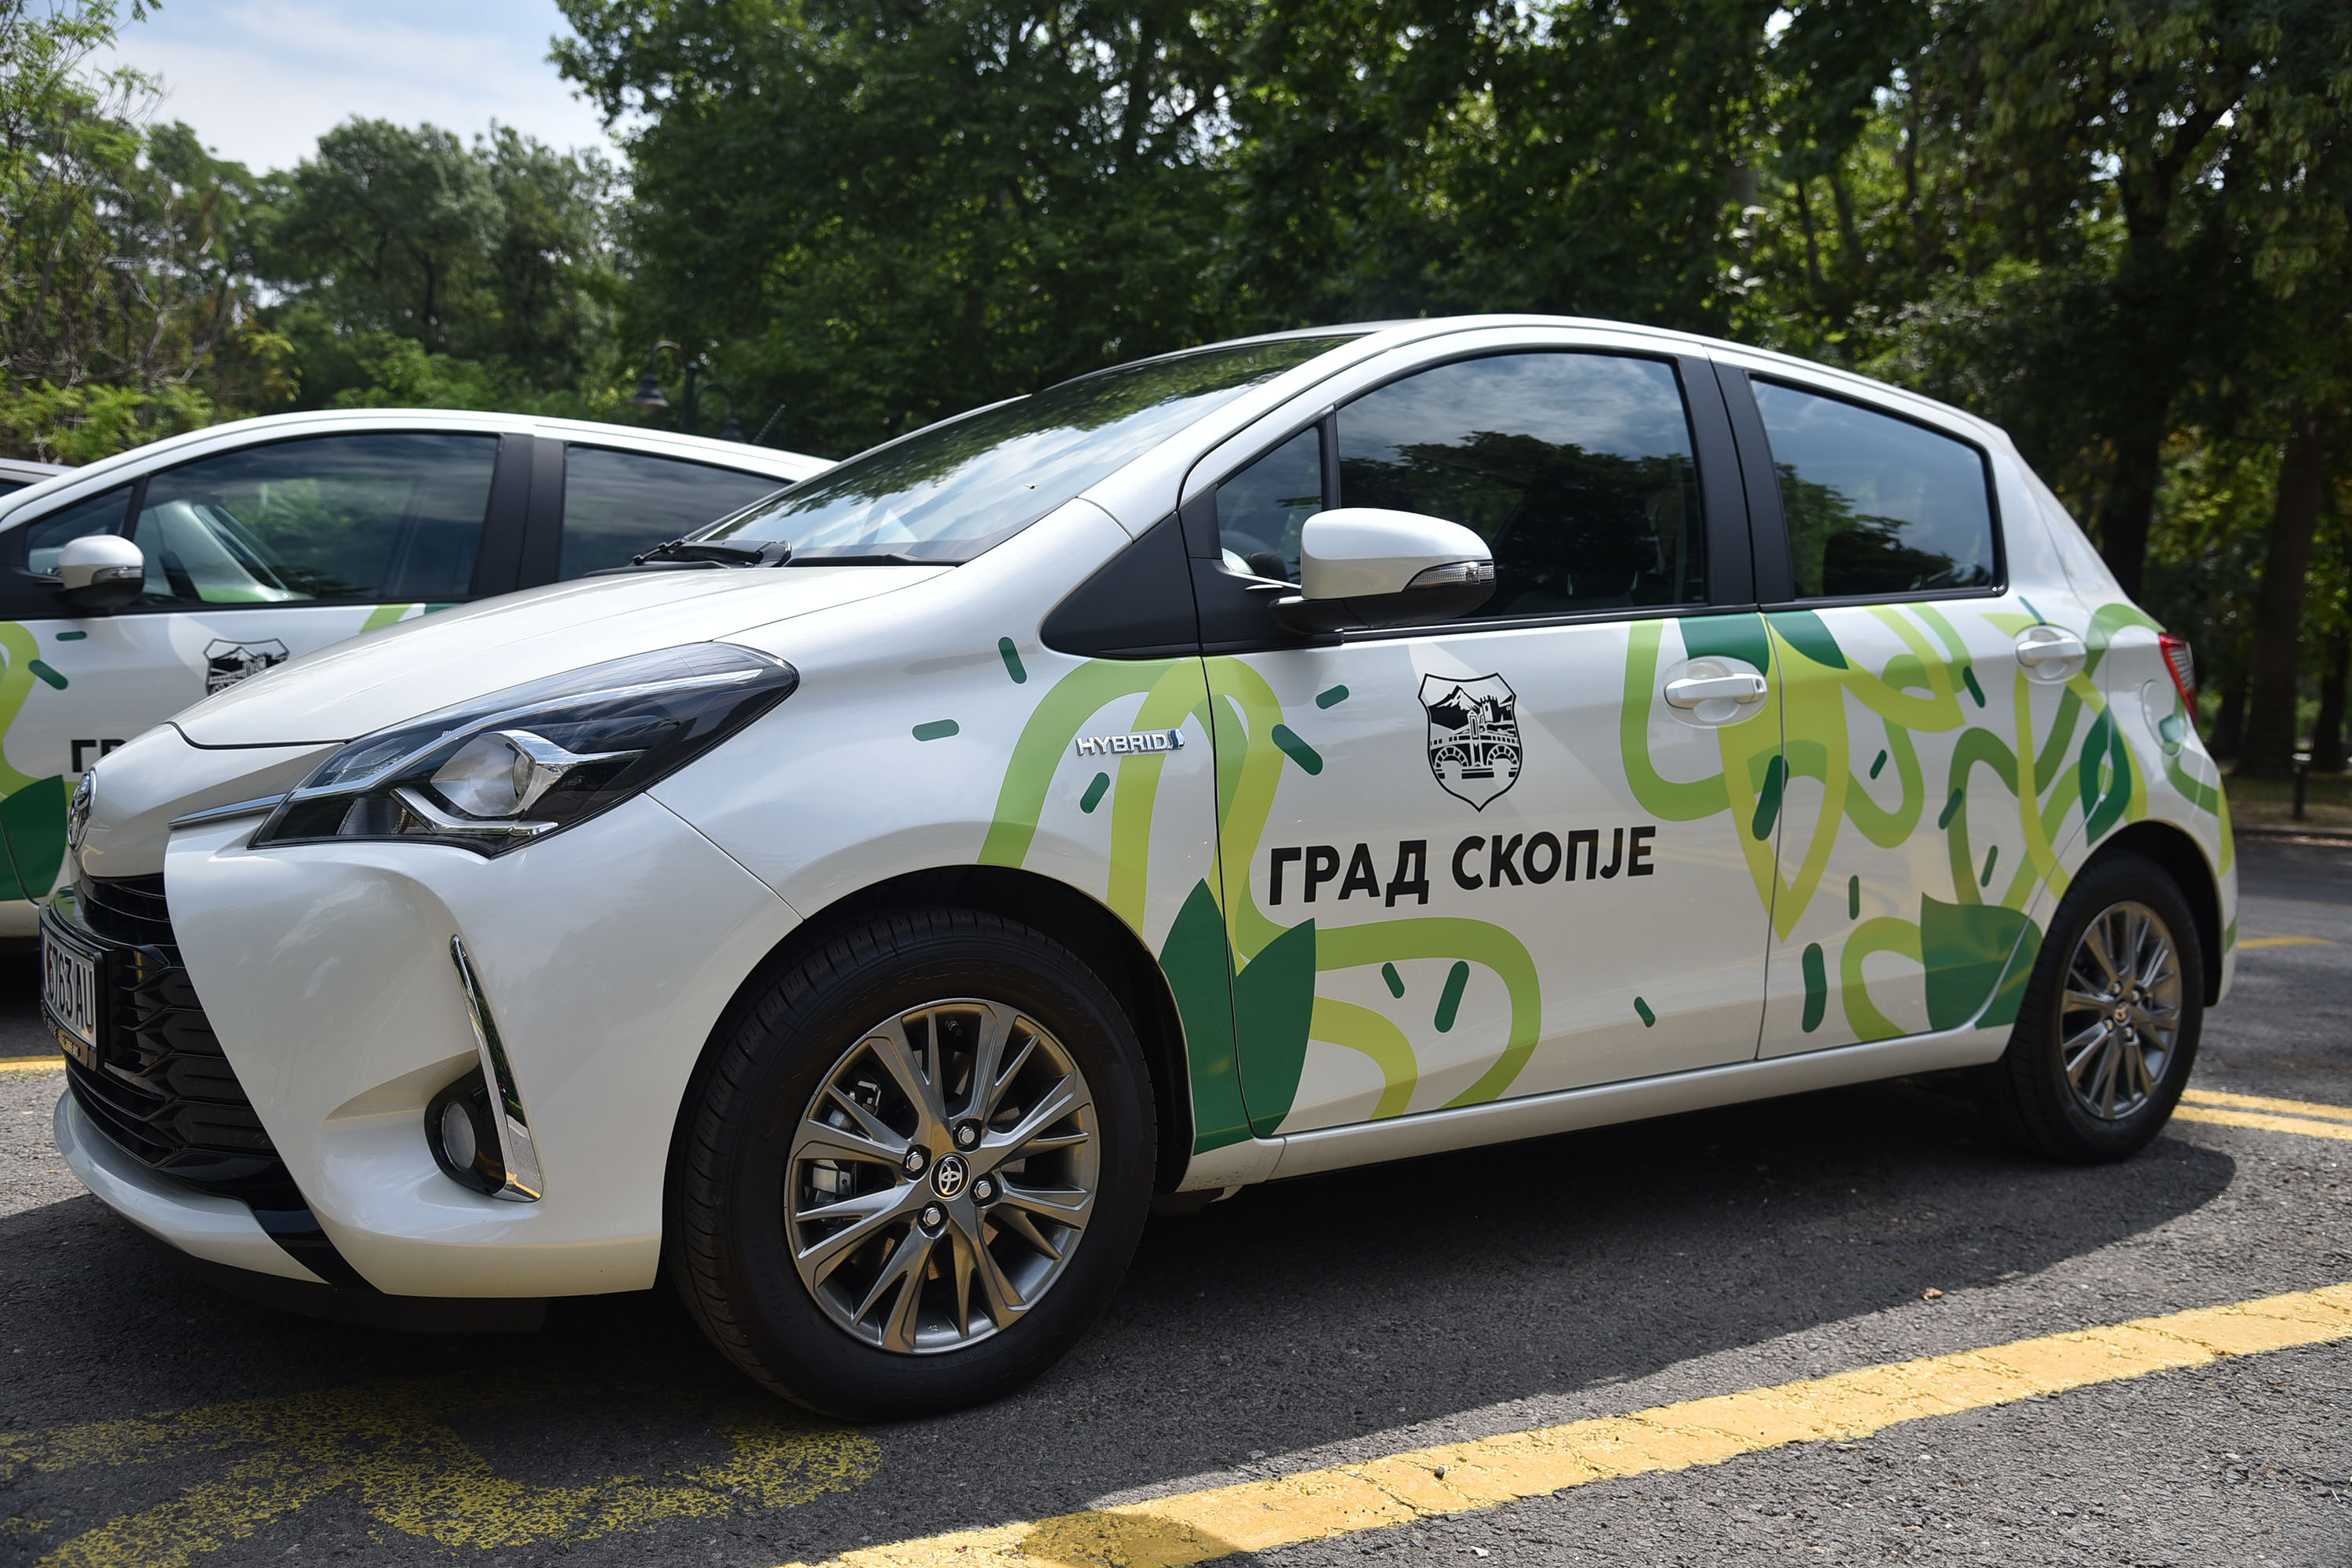 ГРАД СКОПЈЕ: Нови еко-возила – одговорно однесување кон животната средина и проблемот со аерозагадувањето